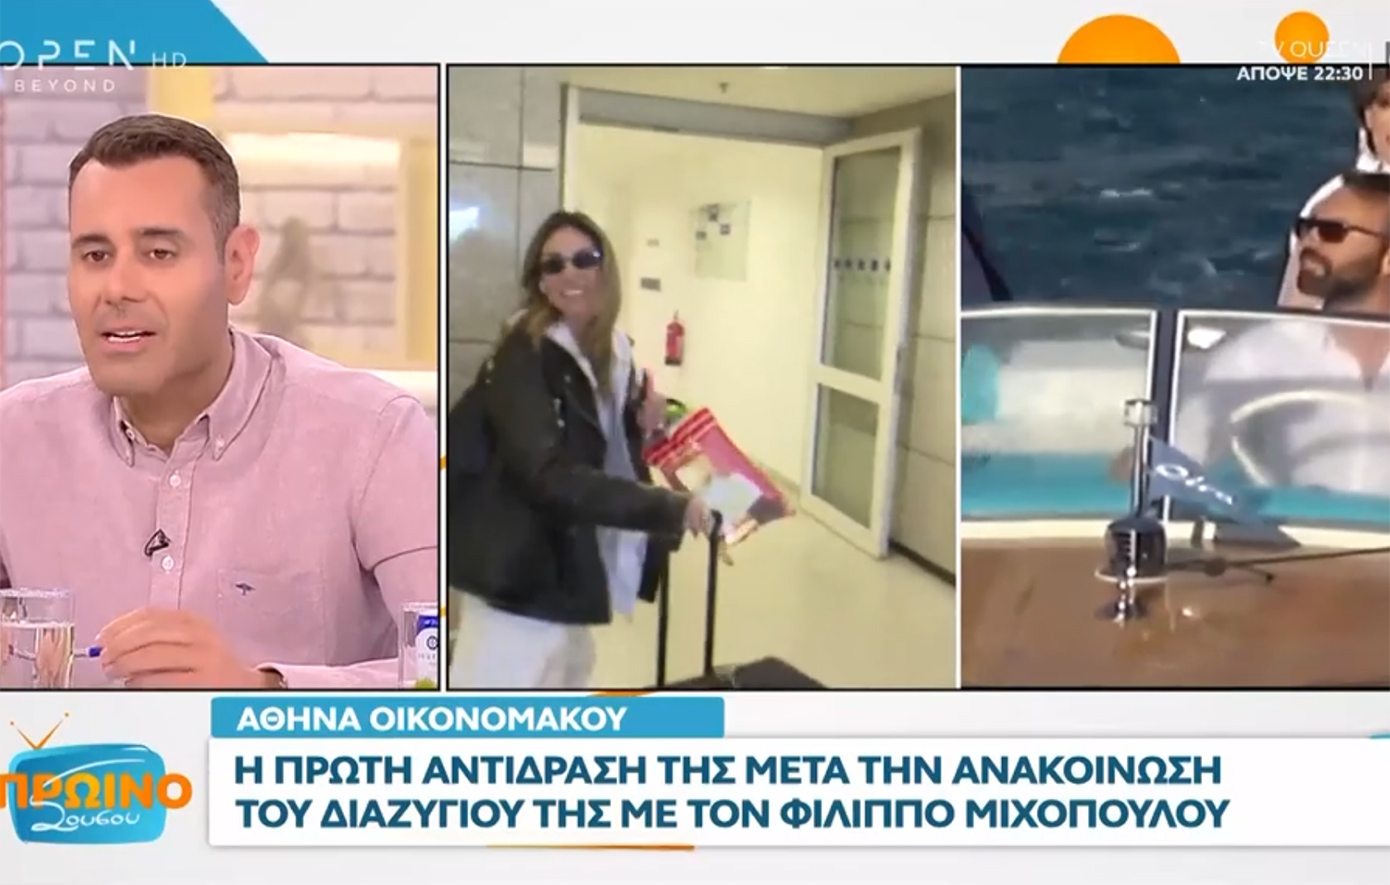 Νίκος Γεωργιάδης: Η Αθηνά Οικονομάκου έχει ήδη γυρίσει σελίδα στη ζωή της